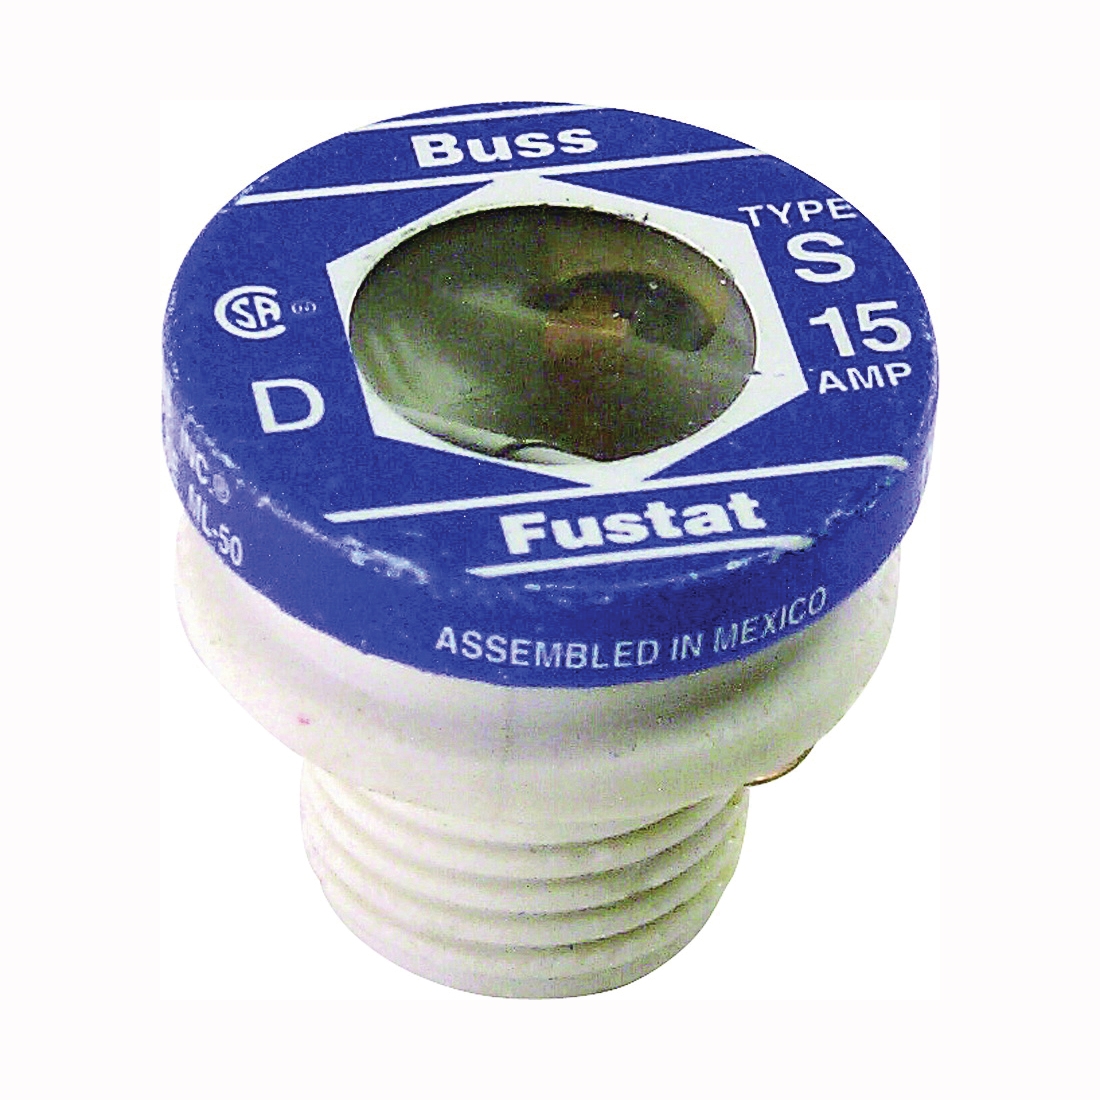 S-15 Plug Fuse, 15 A, 125 V, 10 kA Interrupt, Low Voltage, Time Delay Fuse